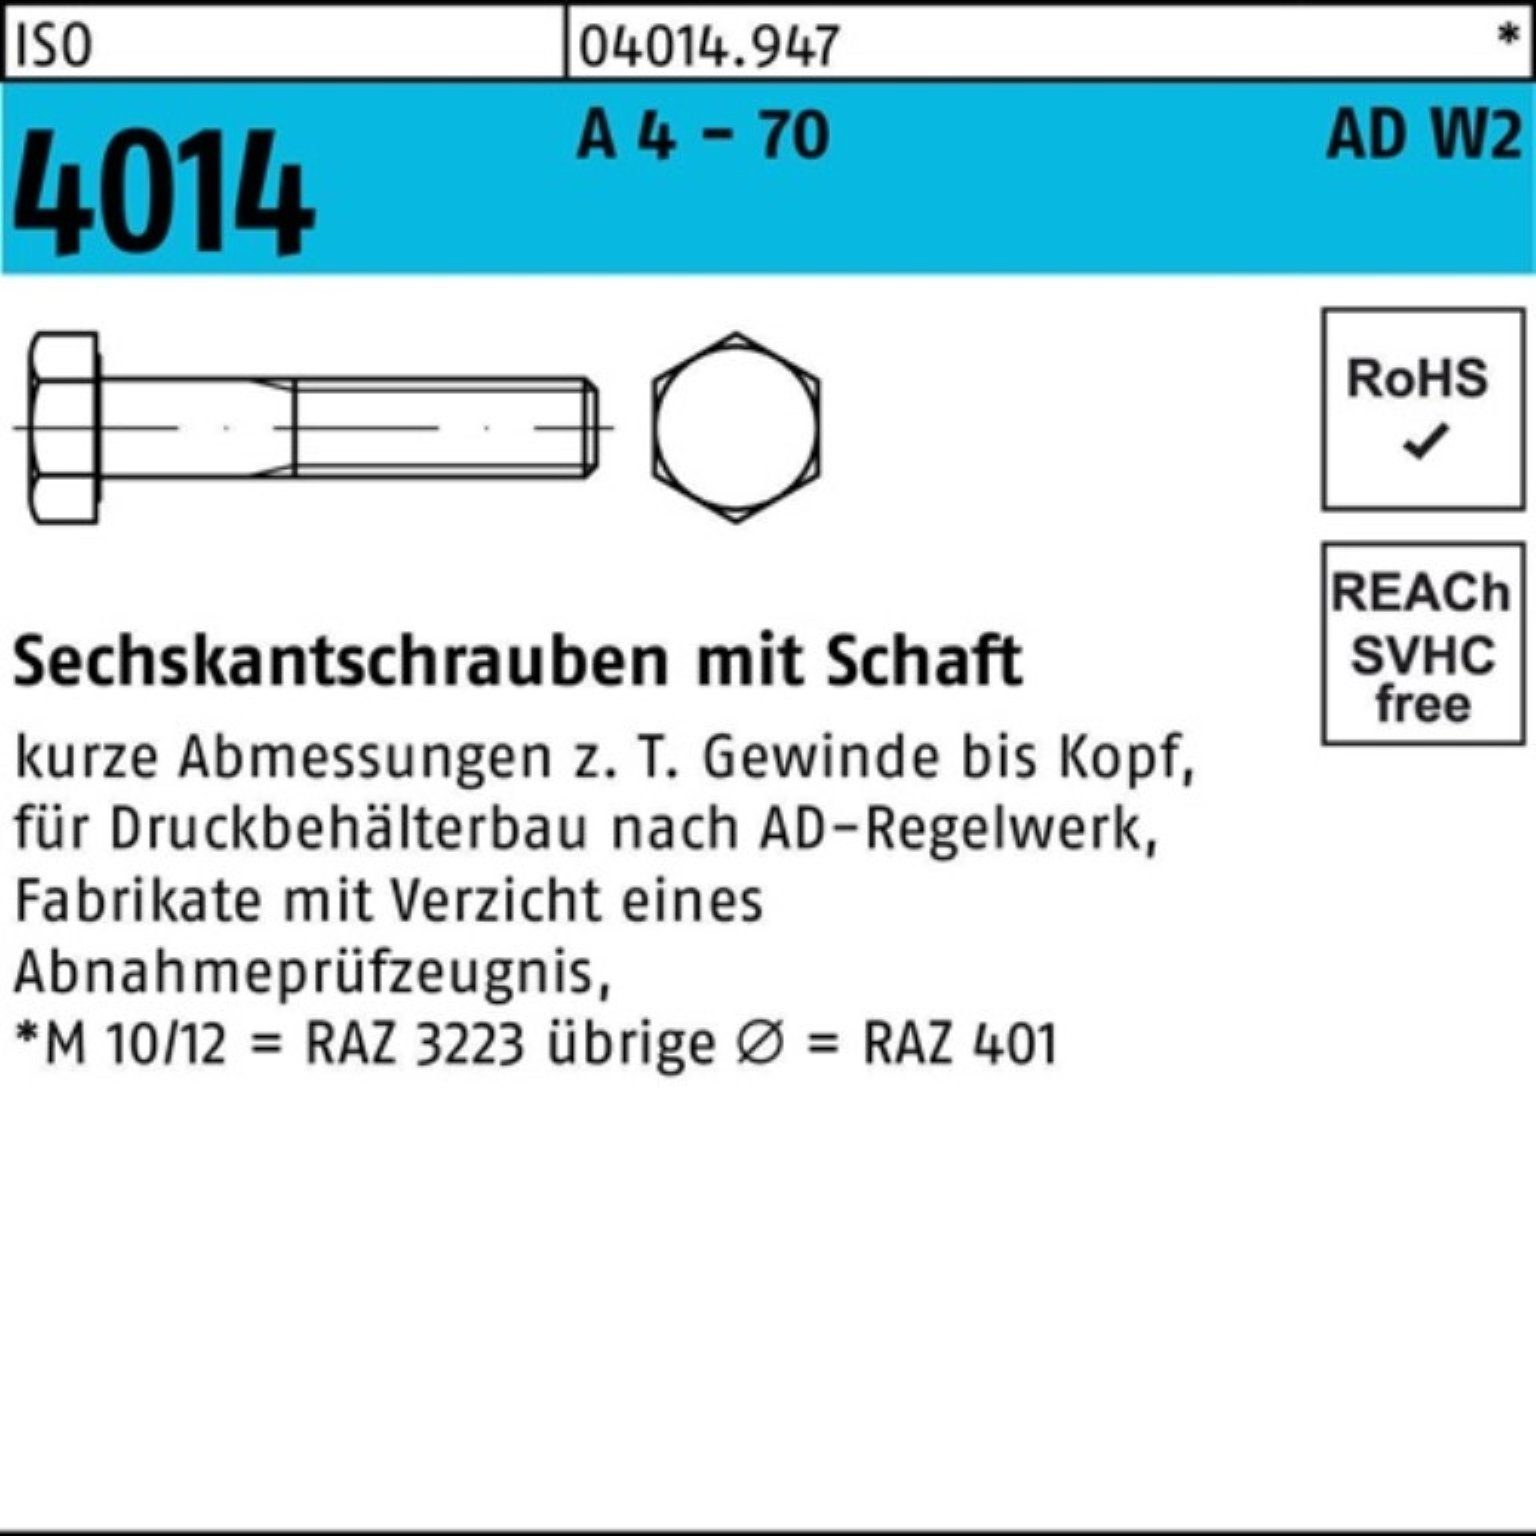 Bufab Sechskantschraube 100er Pack Sechskantschraube ISO 4014 Schaft M20x 120 A 4 - 70 AD-W2 2